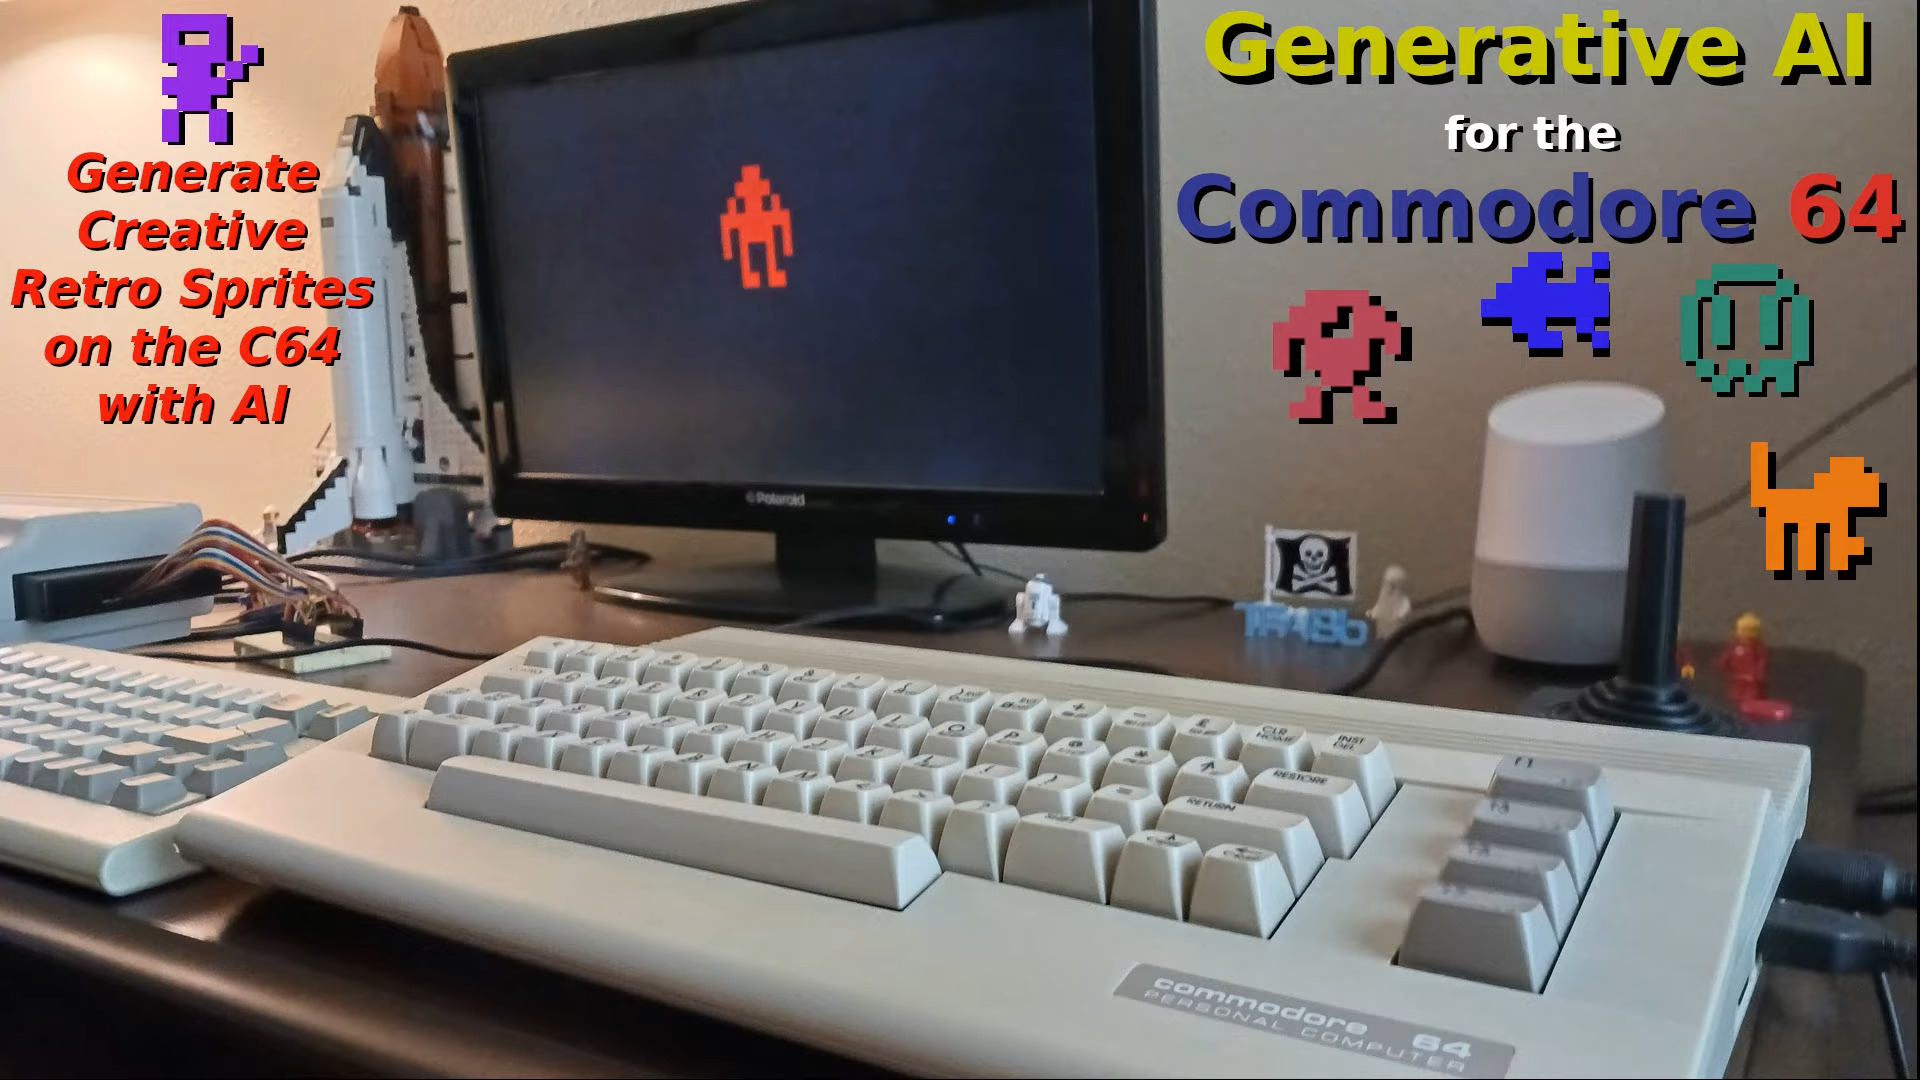 NPU quoi ? Non, je préfère générer mes images IA sur un Commodore 64.